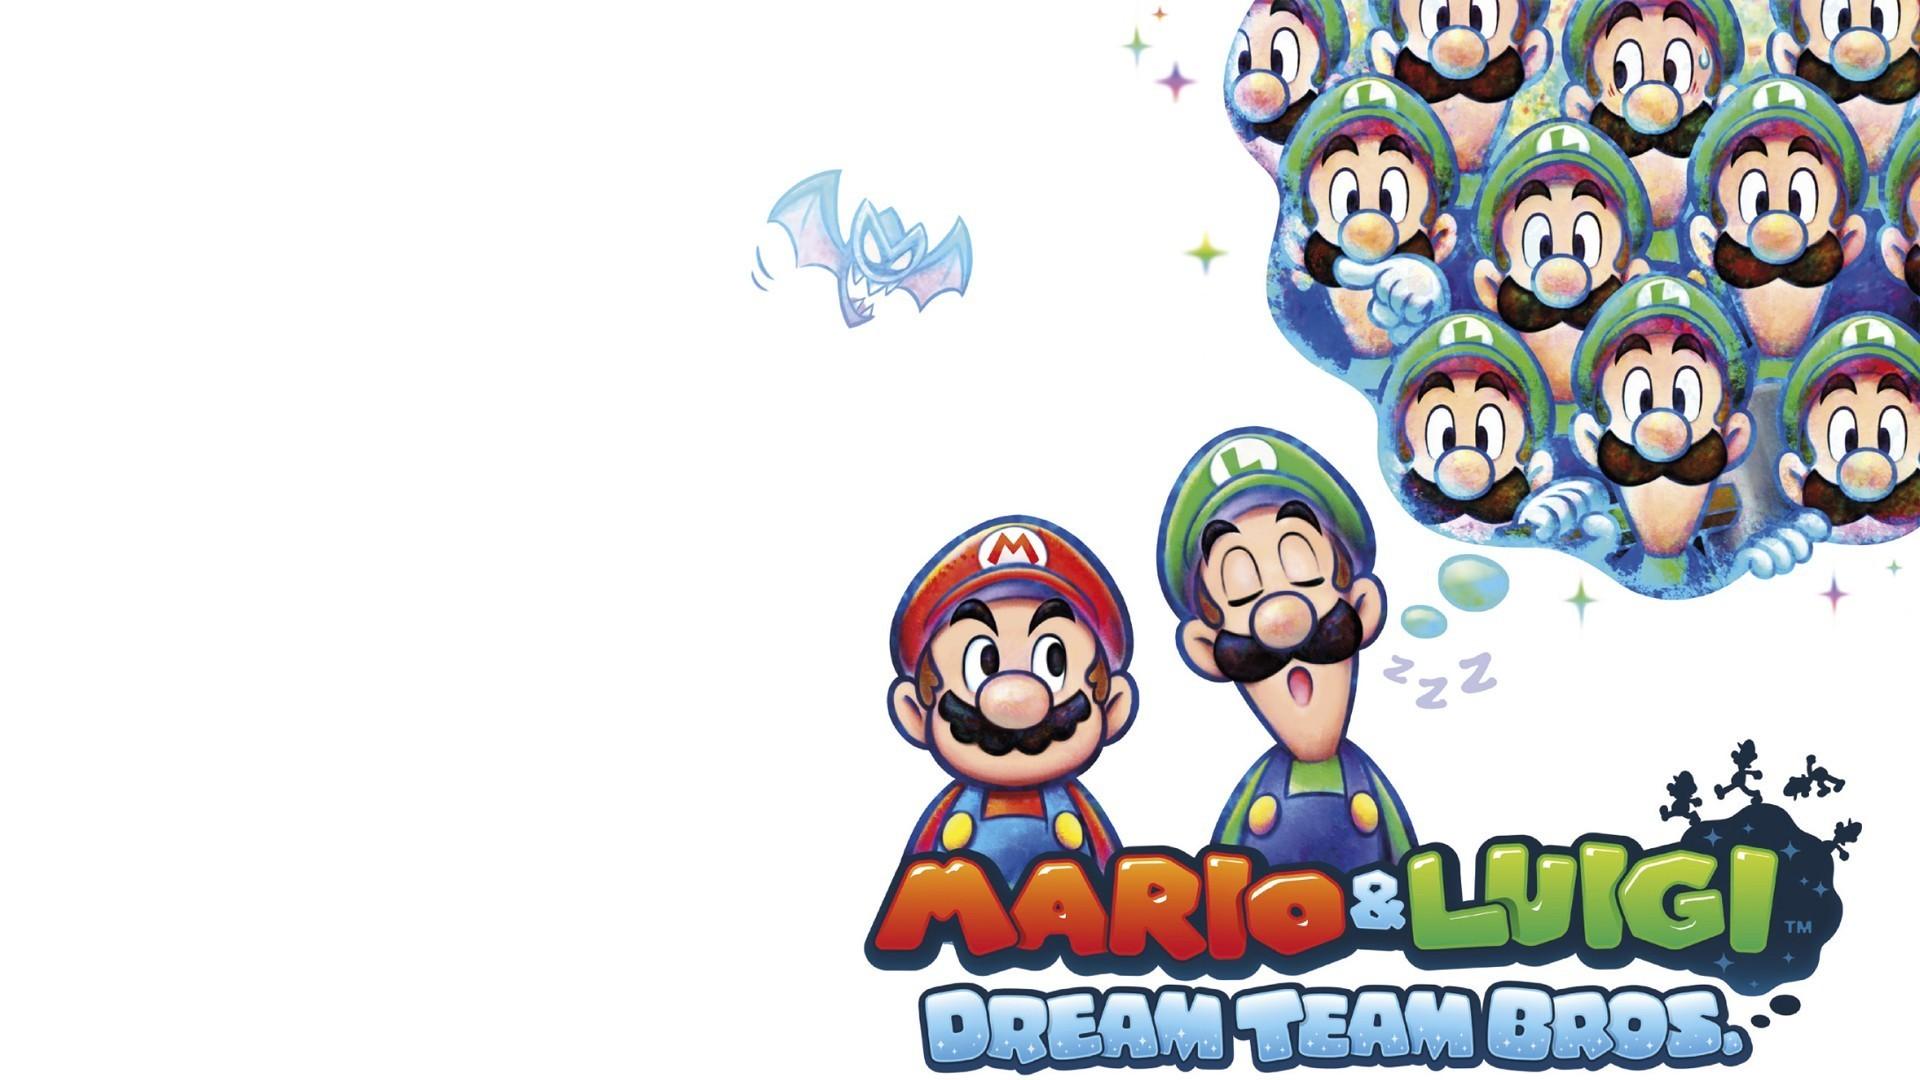 Mario and Luigi Dream Team. Dream Team Bros 2вы. Mario and Luigi Dream Team Wallpaper. Mario Dream Team Wallpaper. Mario luigi dream